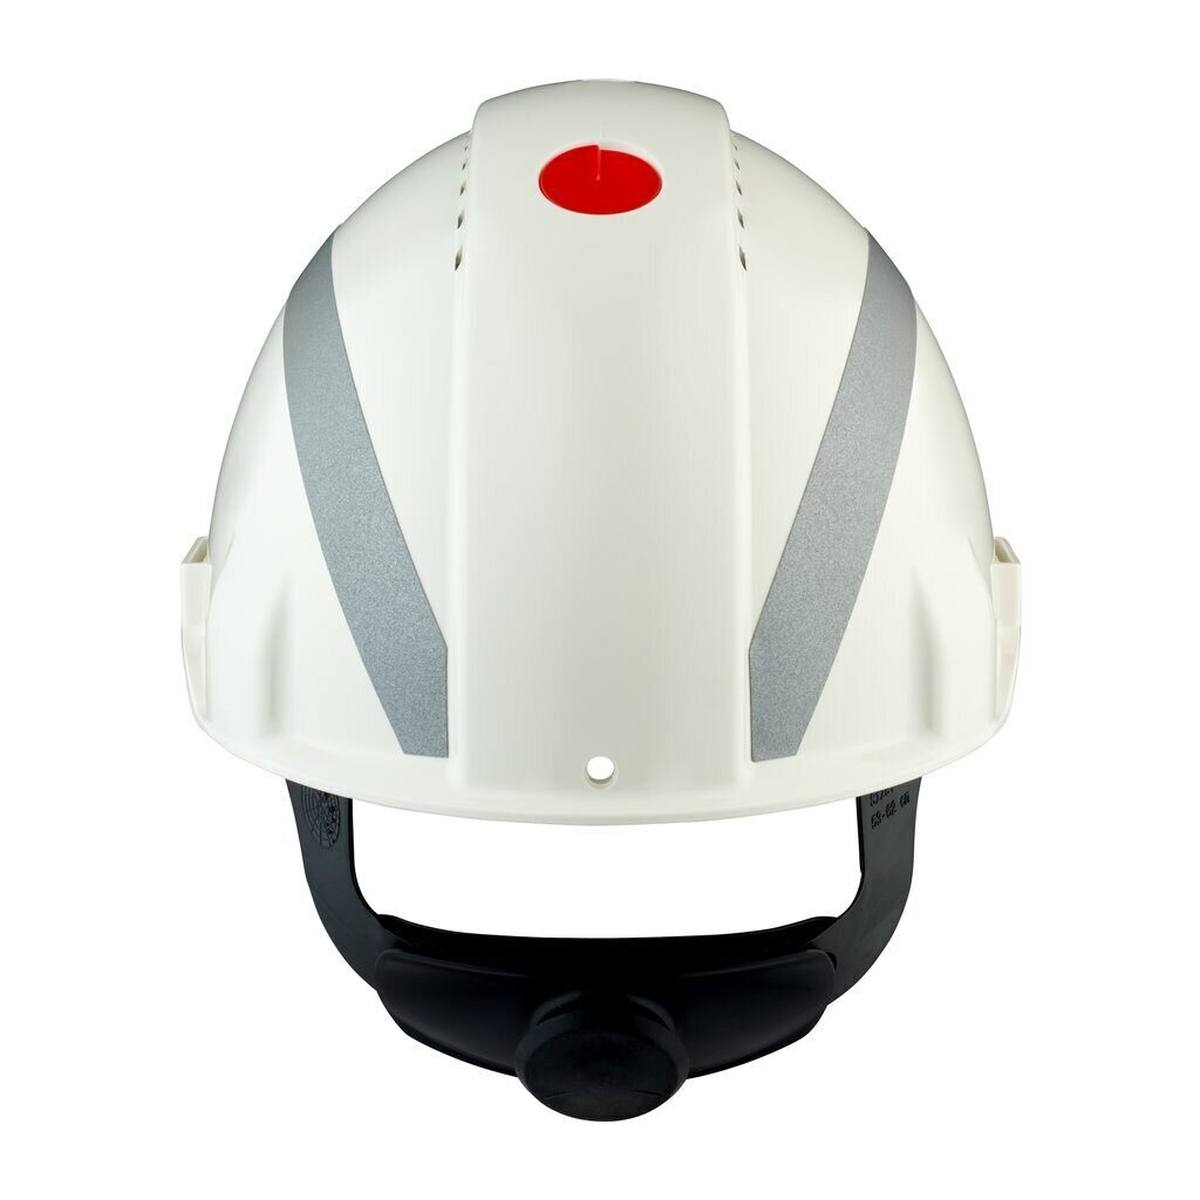 elmetto di sicurezza 3M G3000 con indicatore UV, bianco, ABS, chiusura a cricchetto ventilata, fascia antisudore in plastica, adesivo riflettente